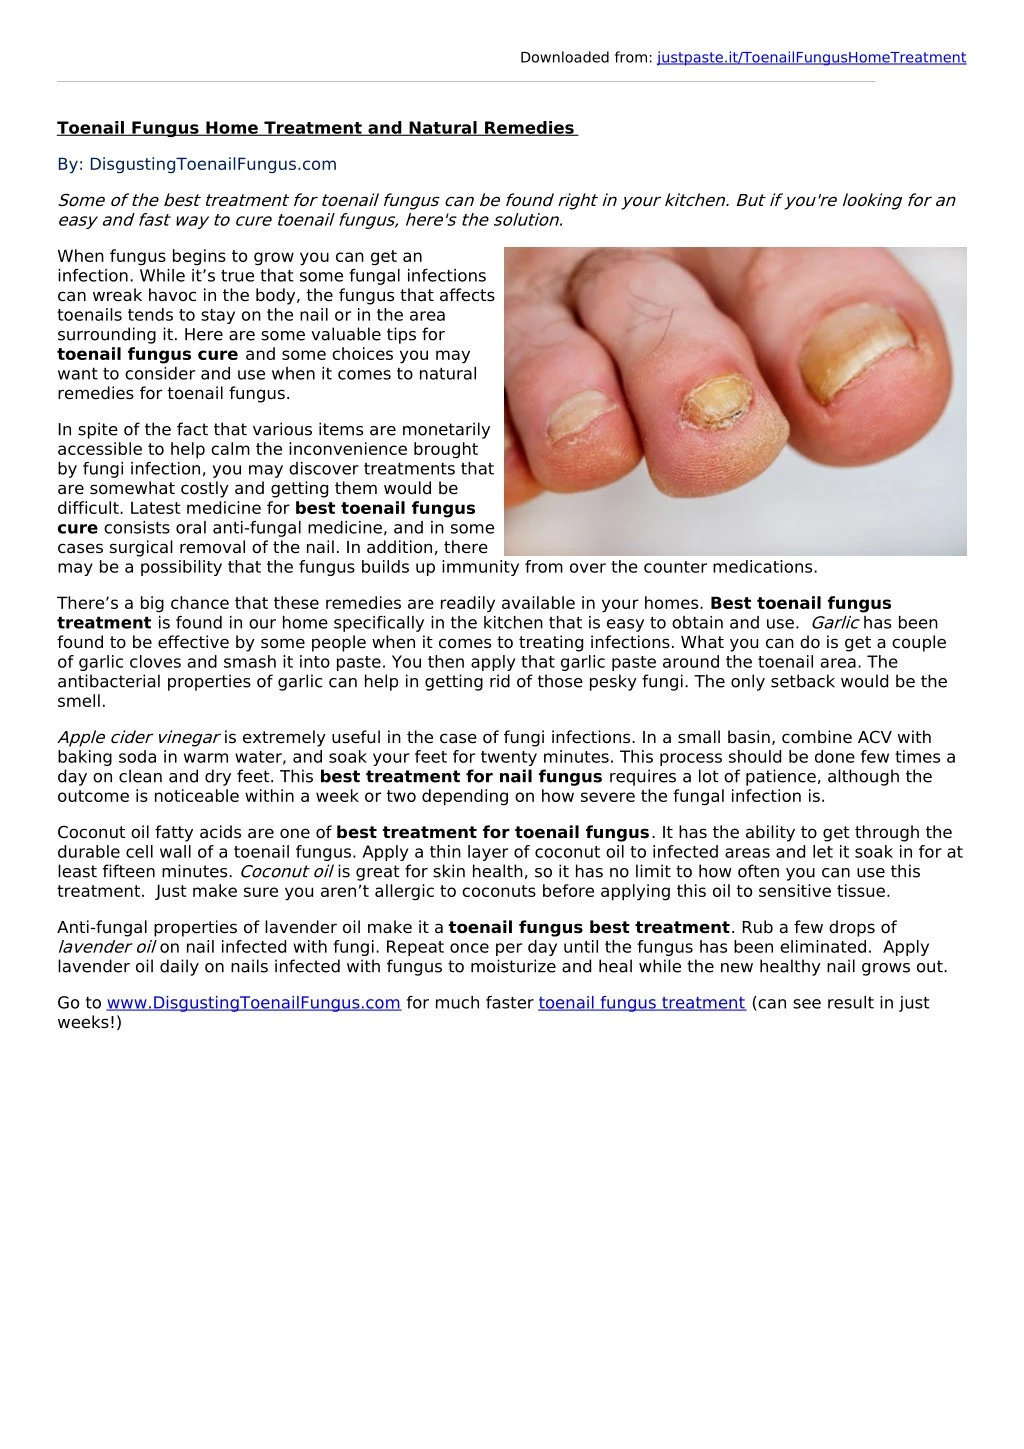 Nail fungus: Diagnosis and treatment